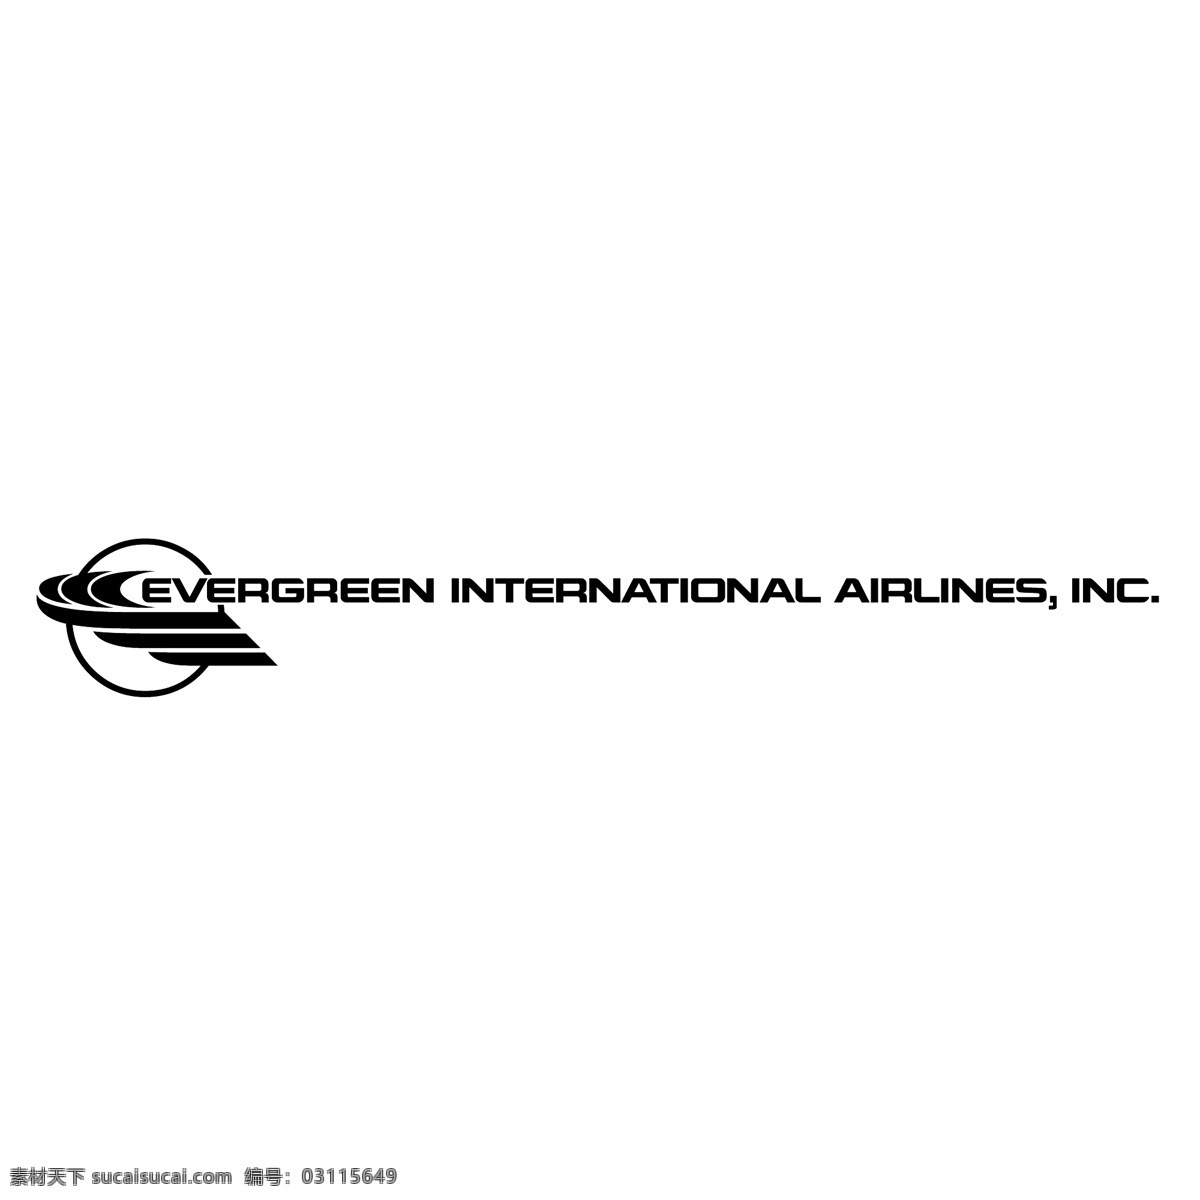 长青 国际航空公司 国际 航空公司 常绿 长荣国际 logo 矢量 矢量长荣国际 向量 矢量图 建筑家居